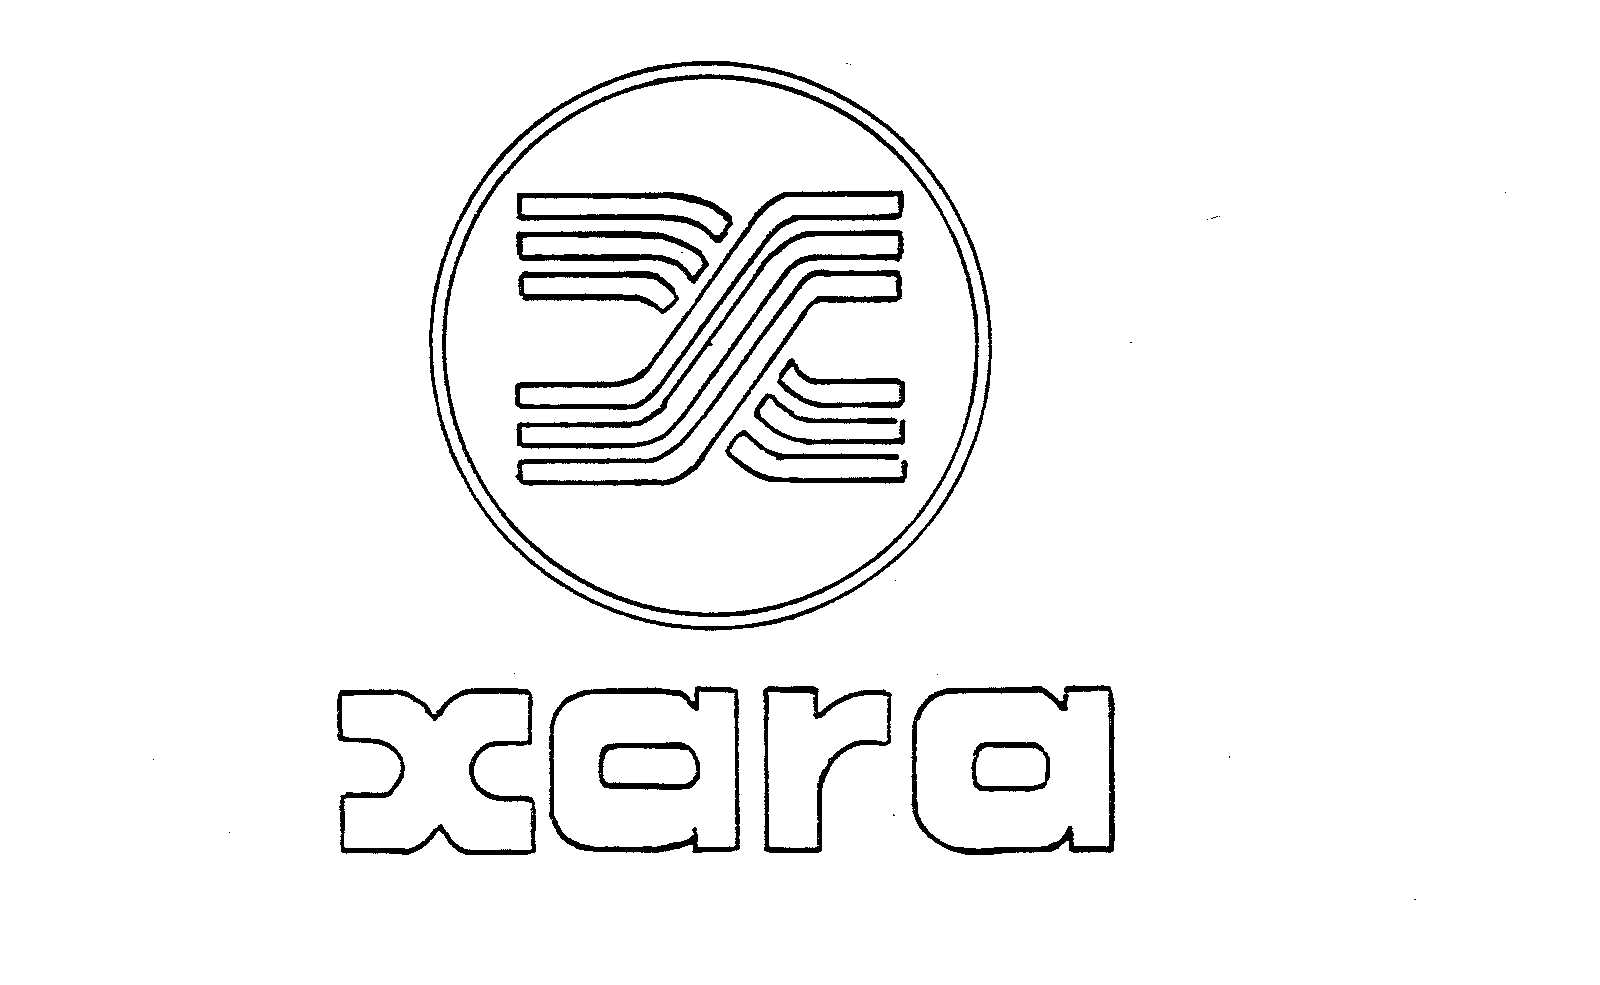 Trademark Logo XARA